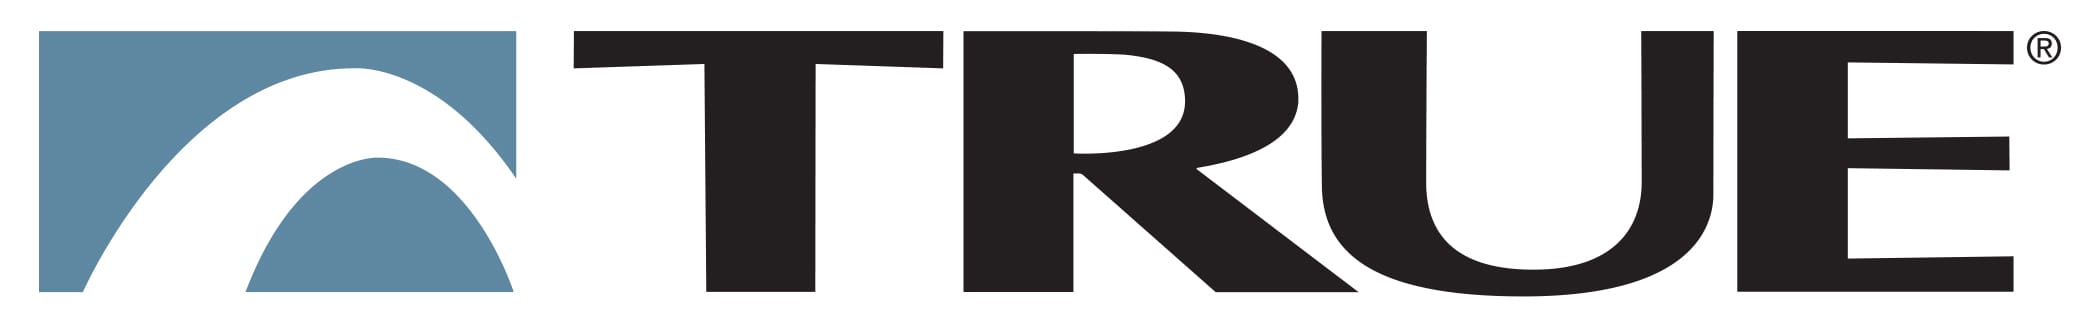 true-fitness-logo.jpg